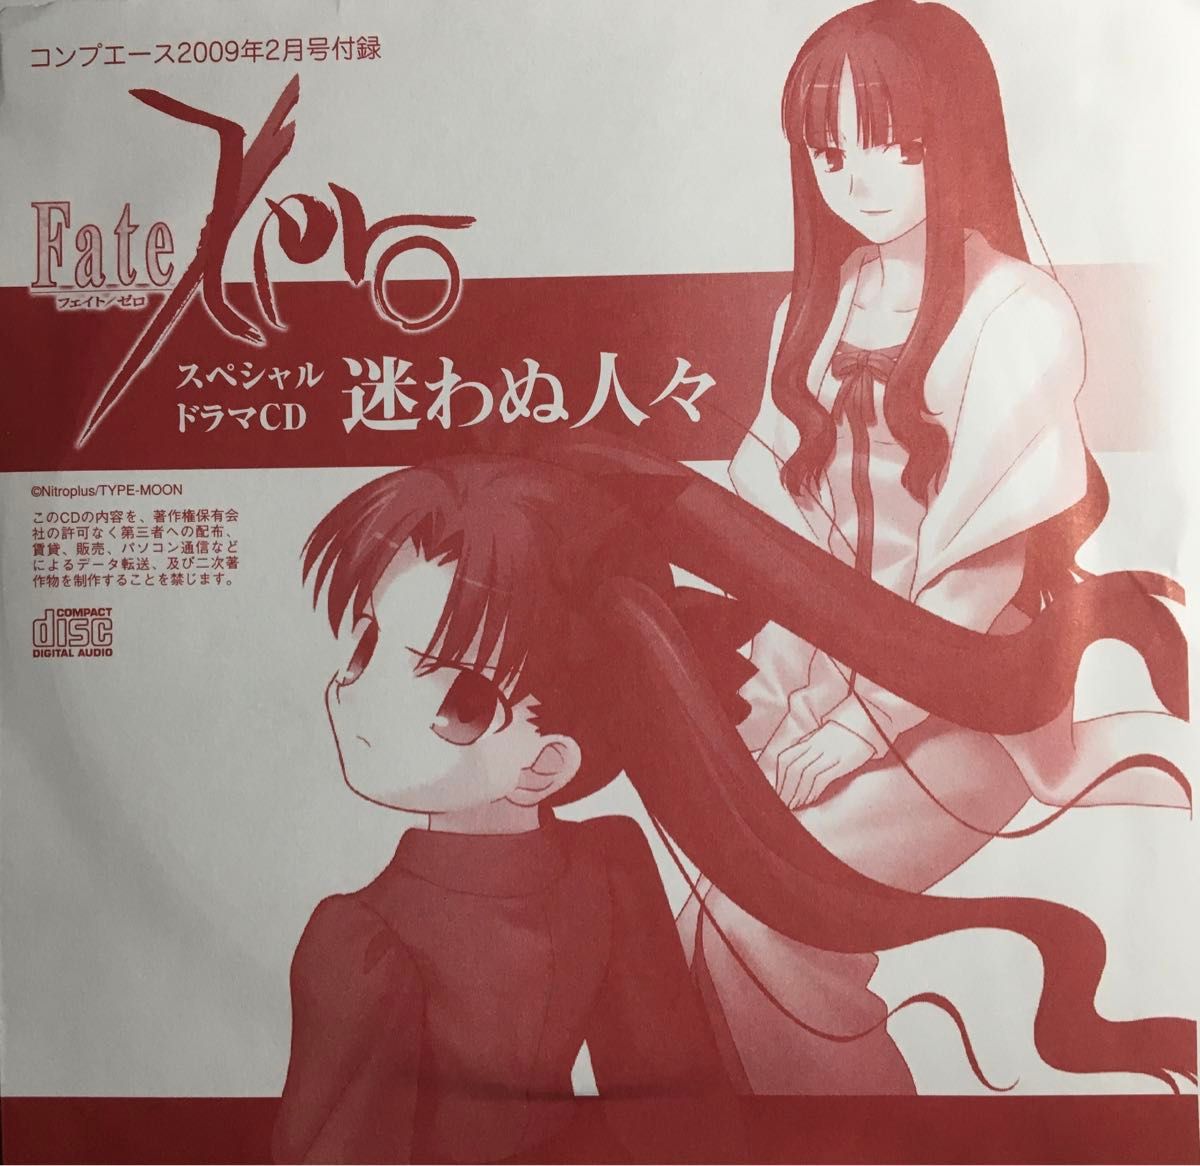 Fate/ZeroドラマCD『迷わぬ人々』新エピソード完全撮りおろし!